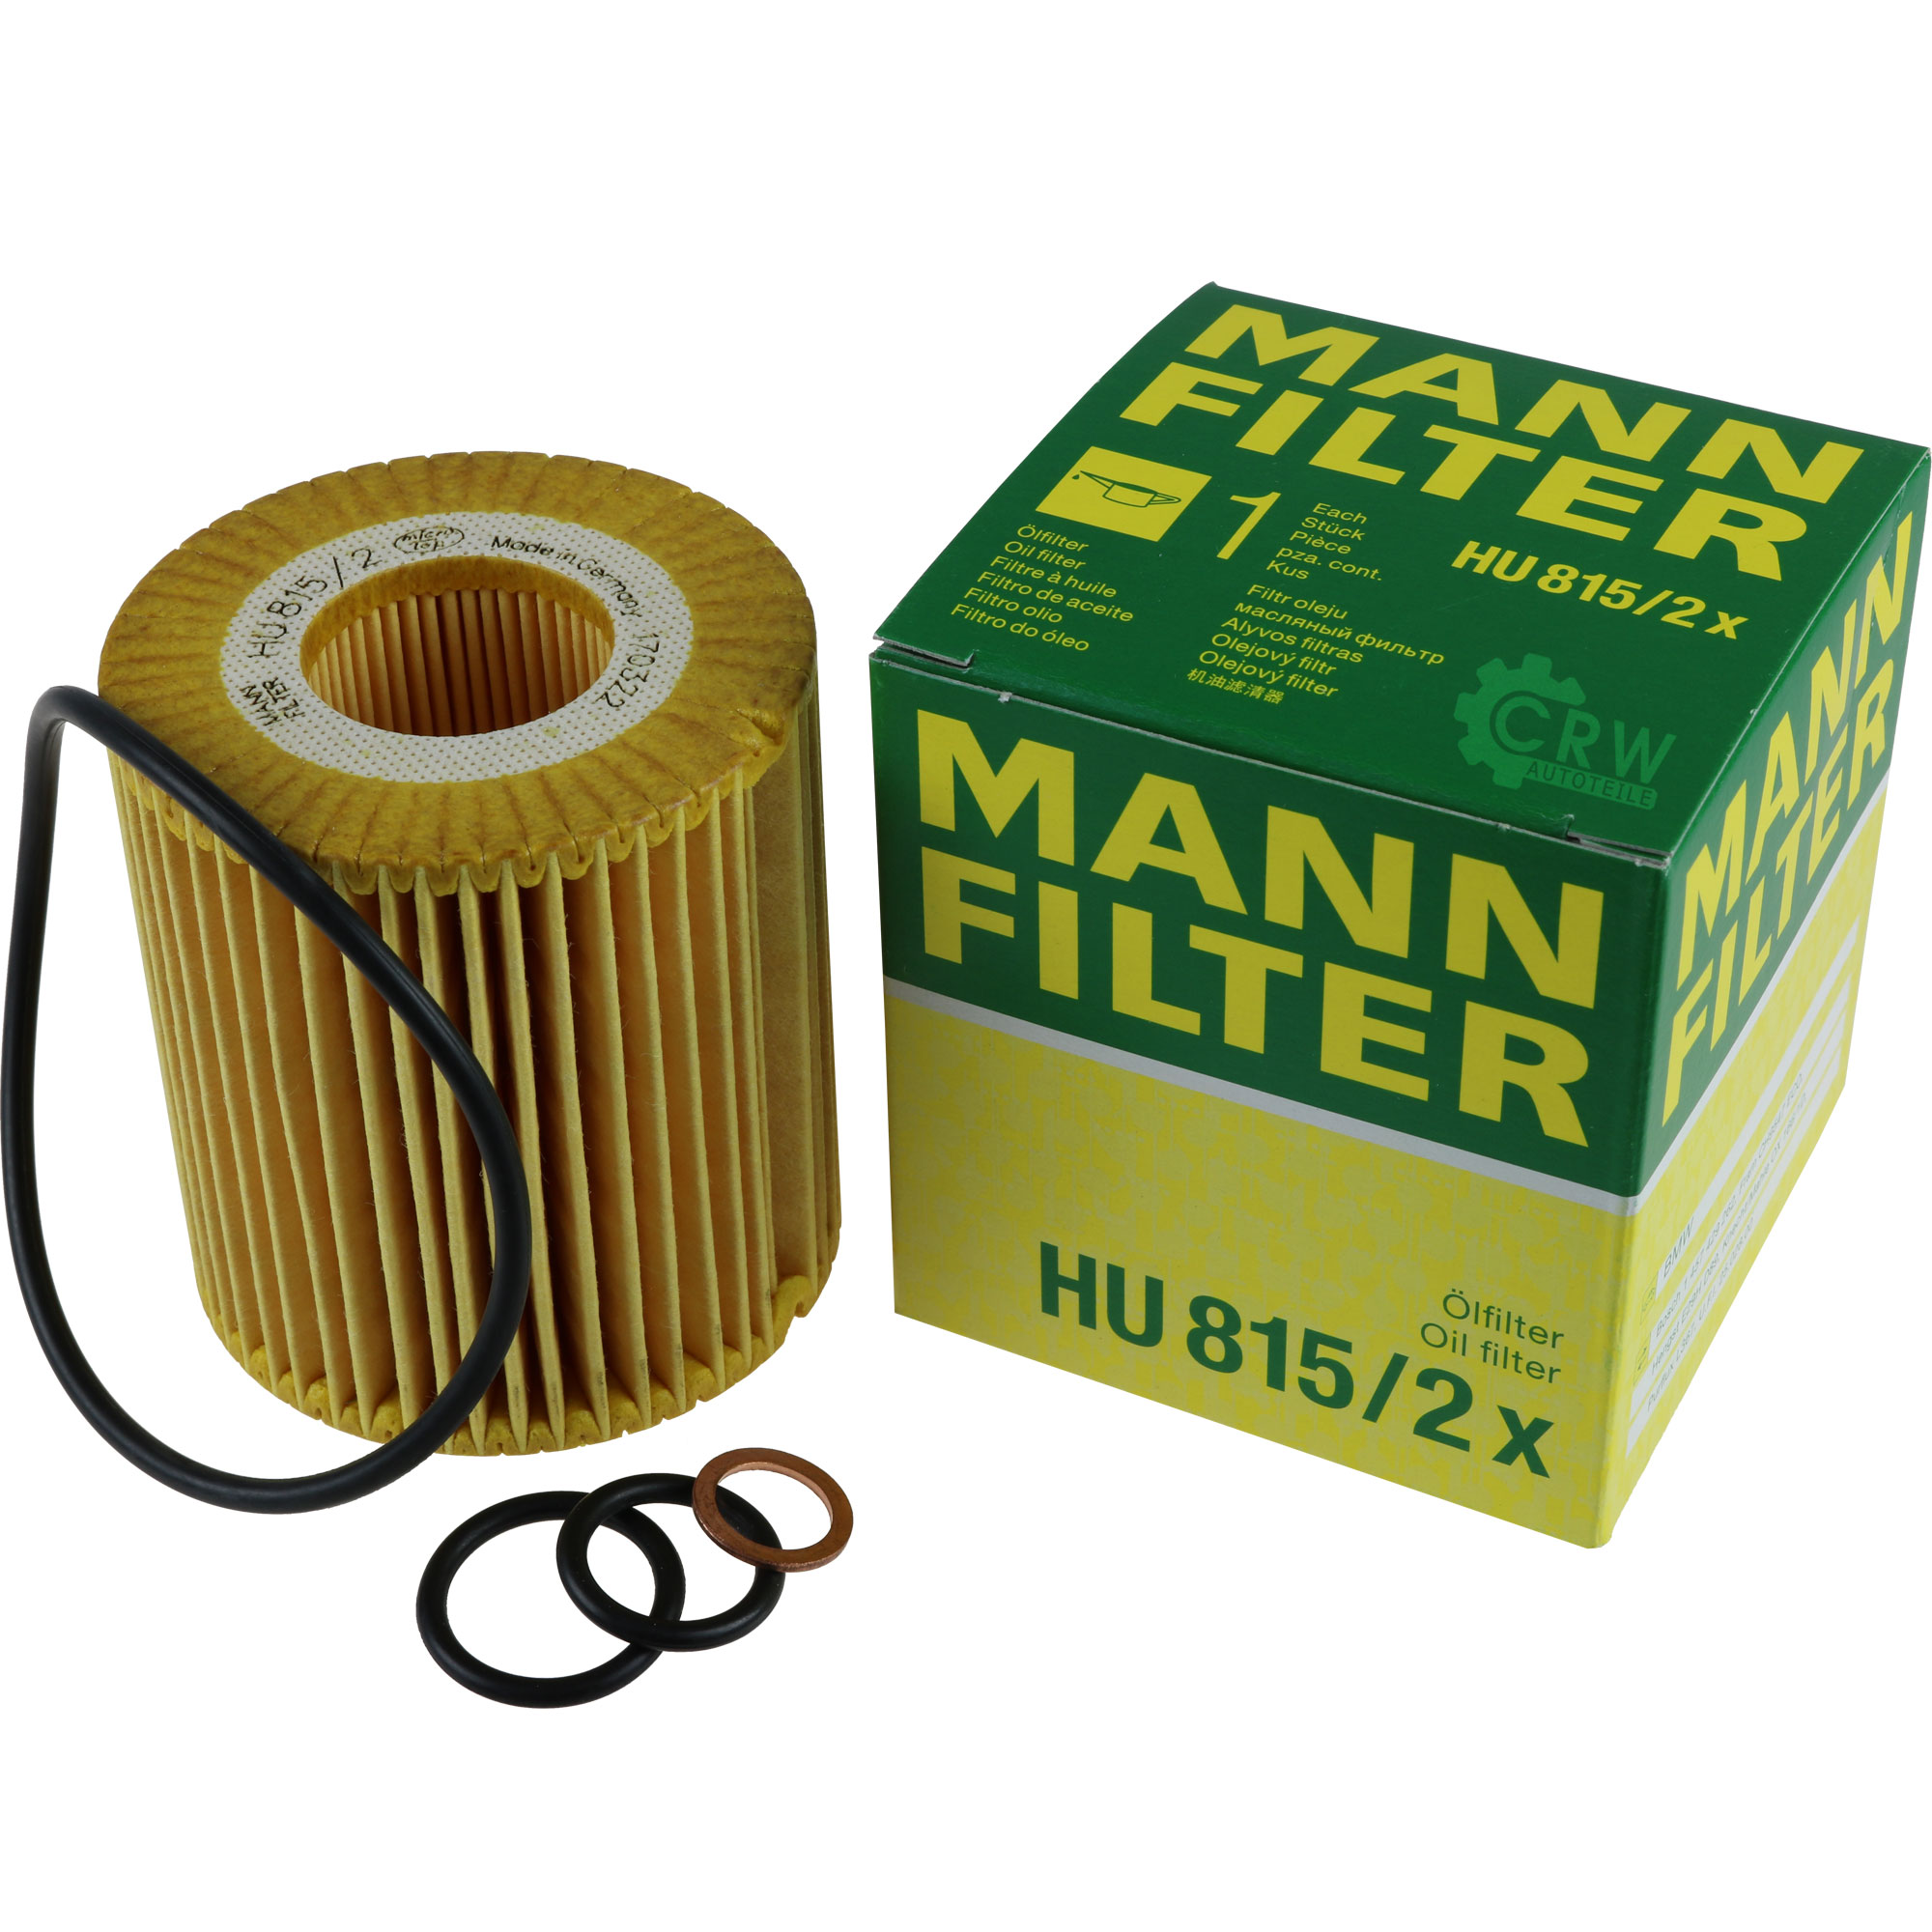 MANN-FILTER Ölfilter HU 815/2 x Oil Filter